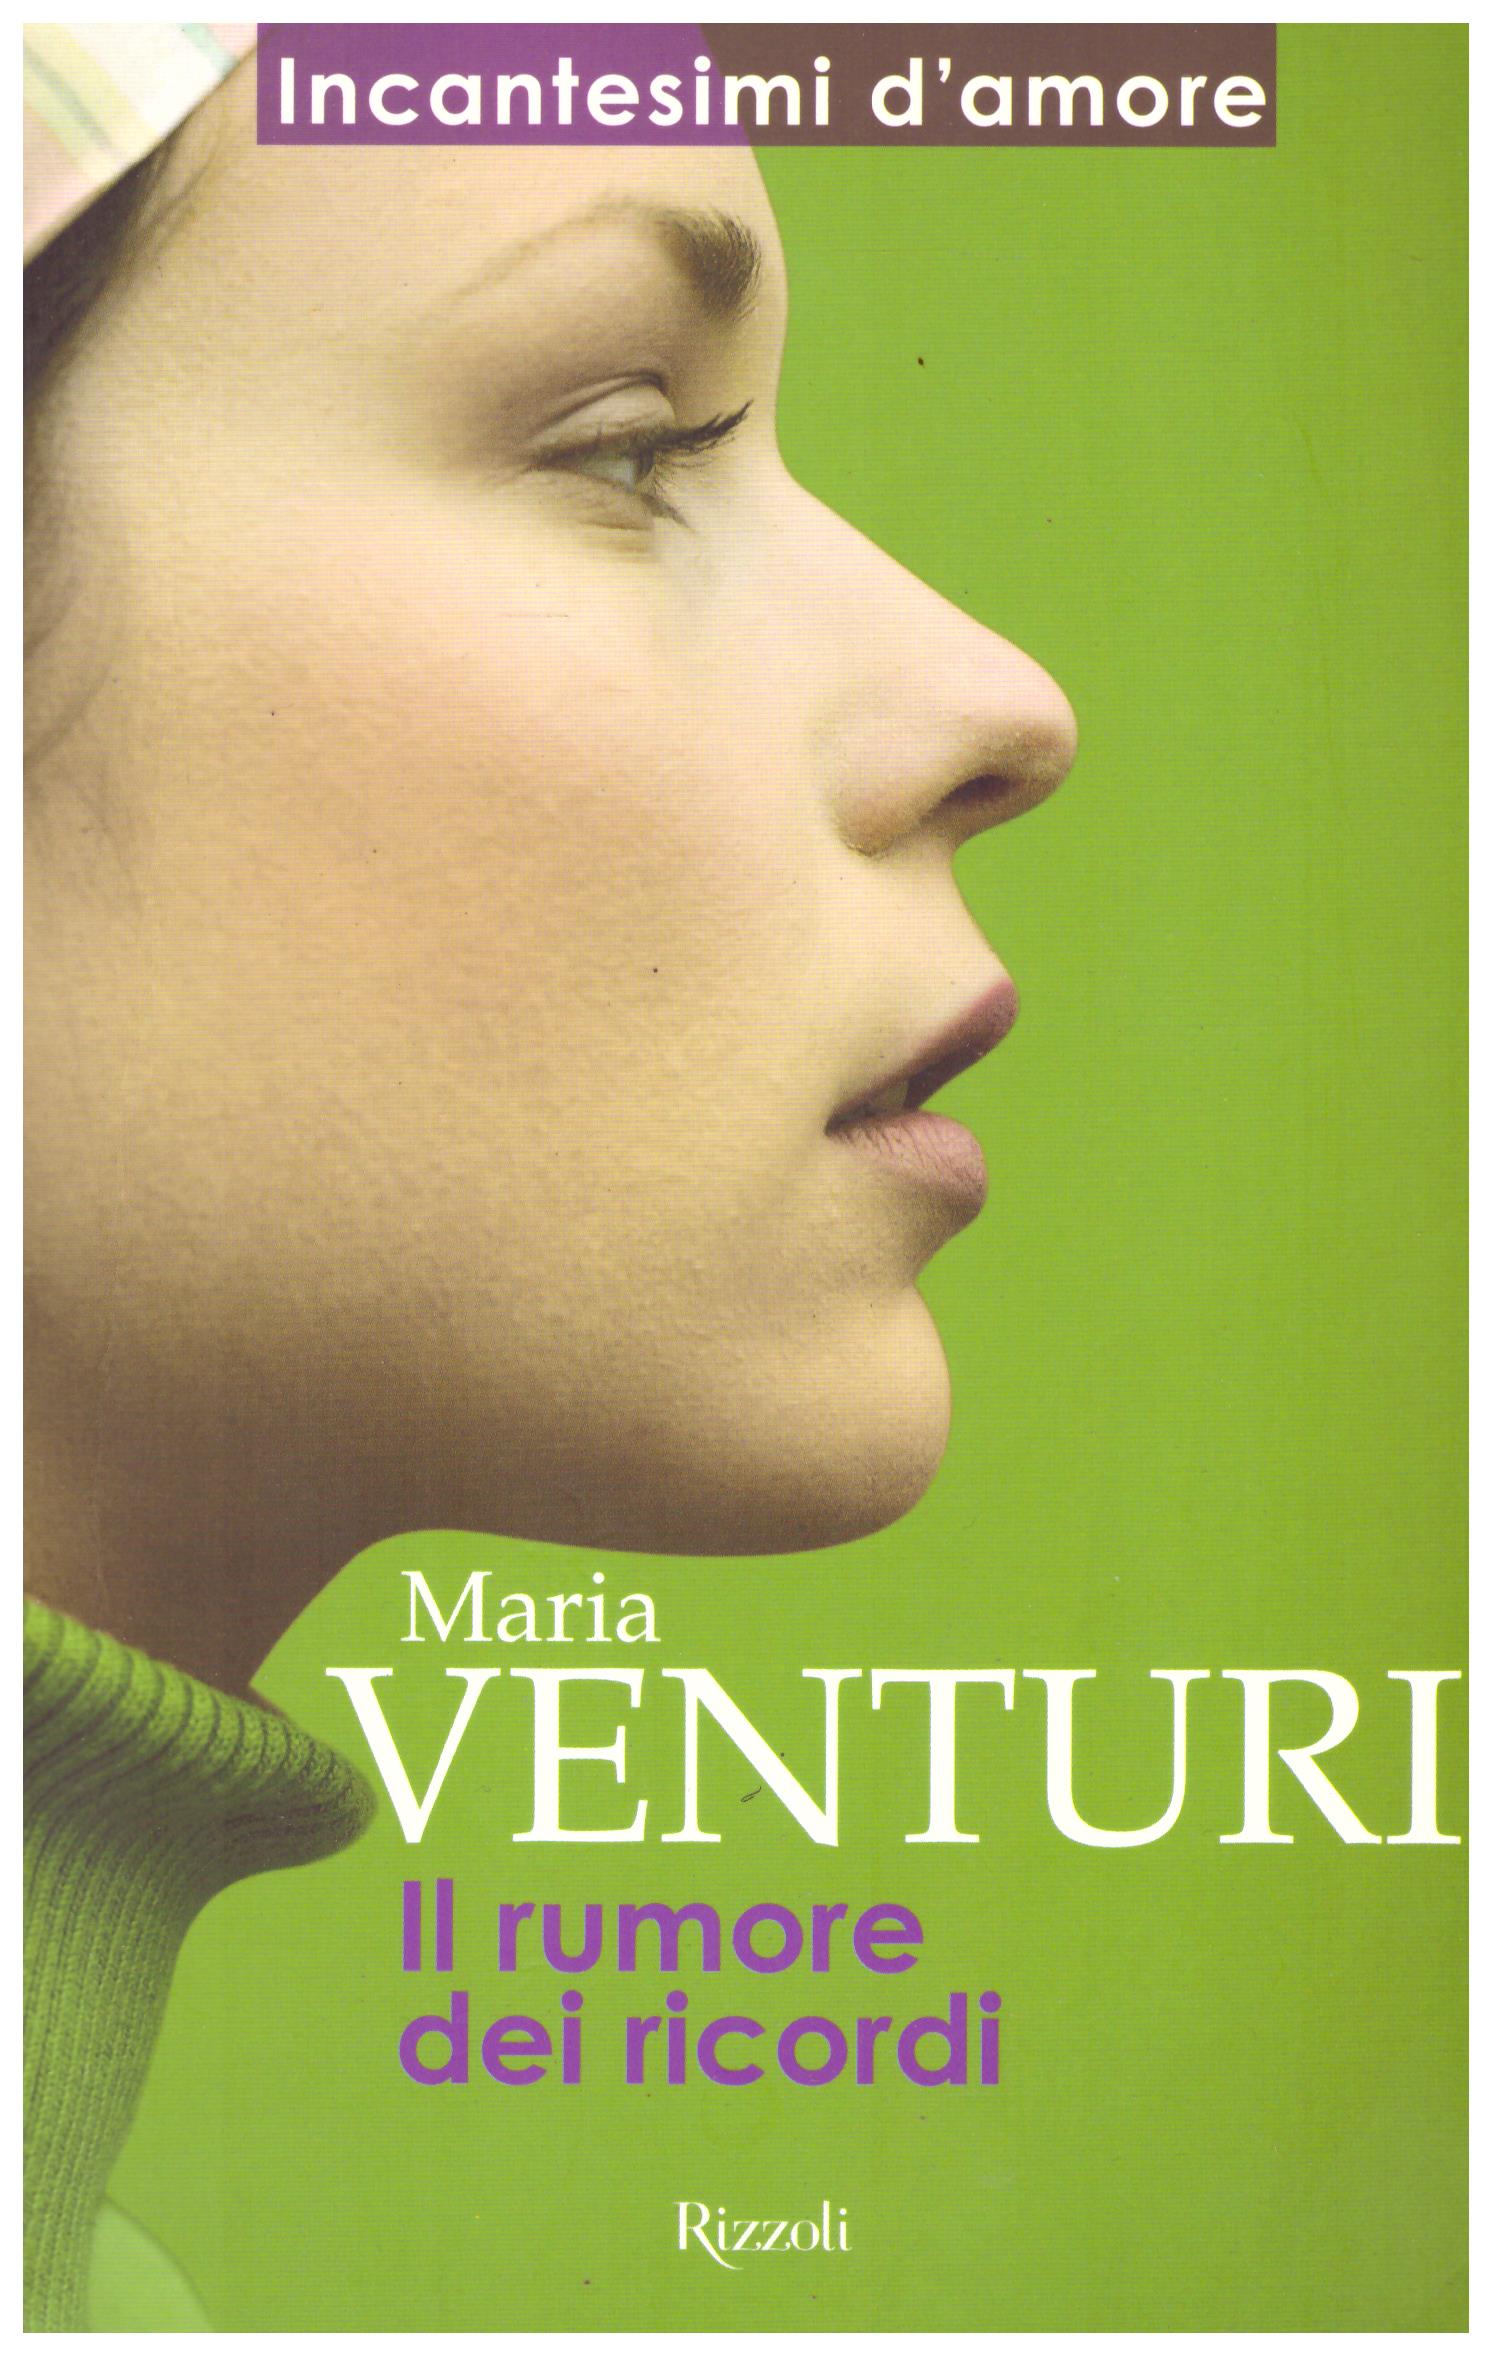 Titolo: Il rumore dei ricordi Autore: Maria Venturi  Editore: Rizzoli, 1997